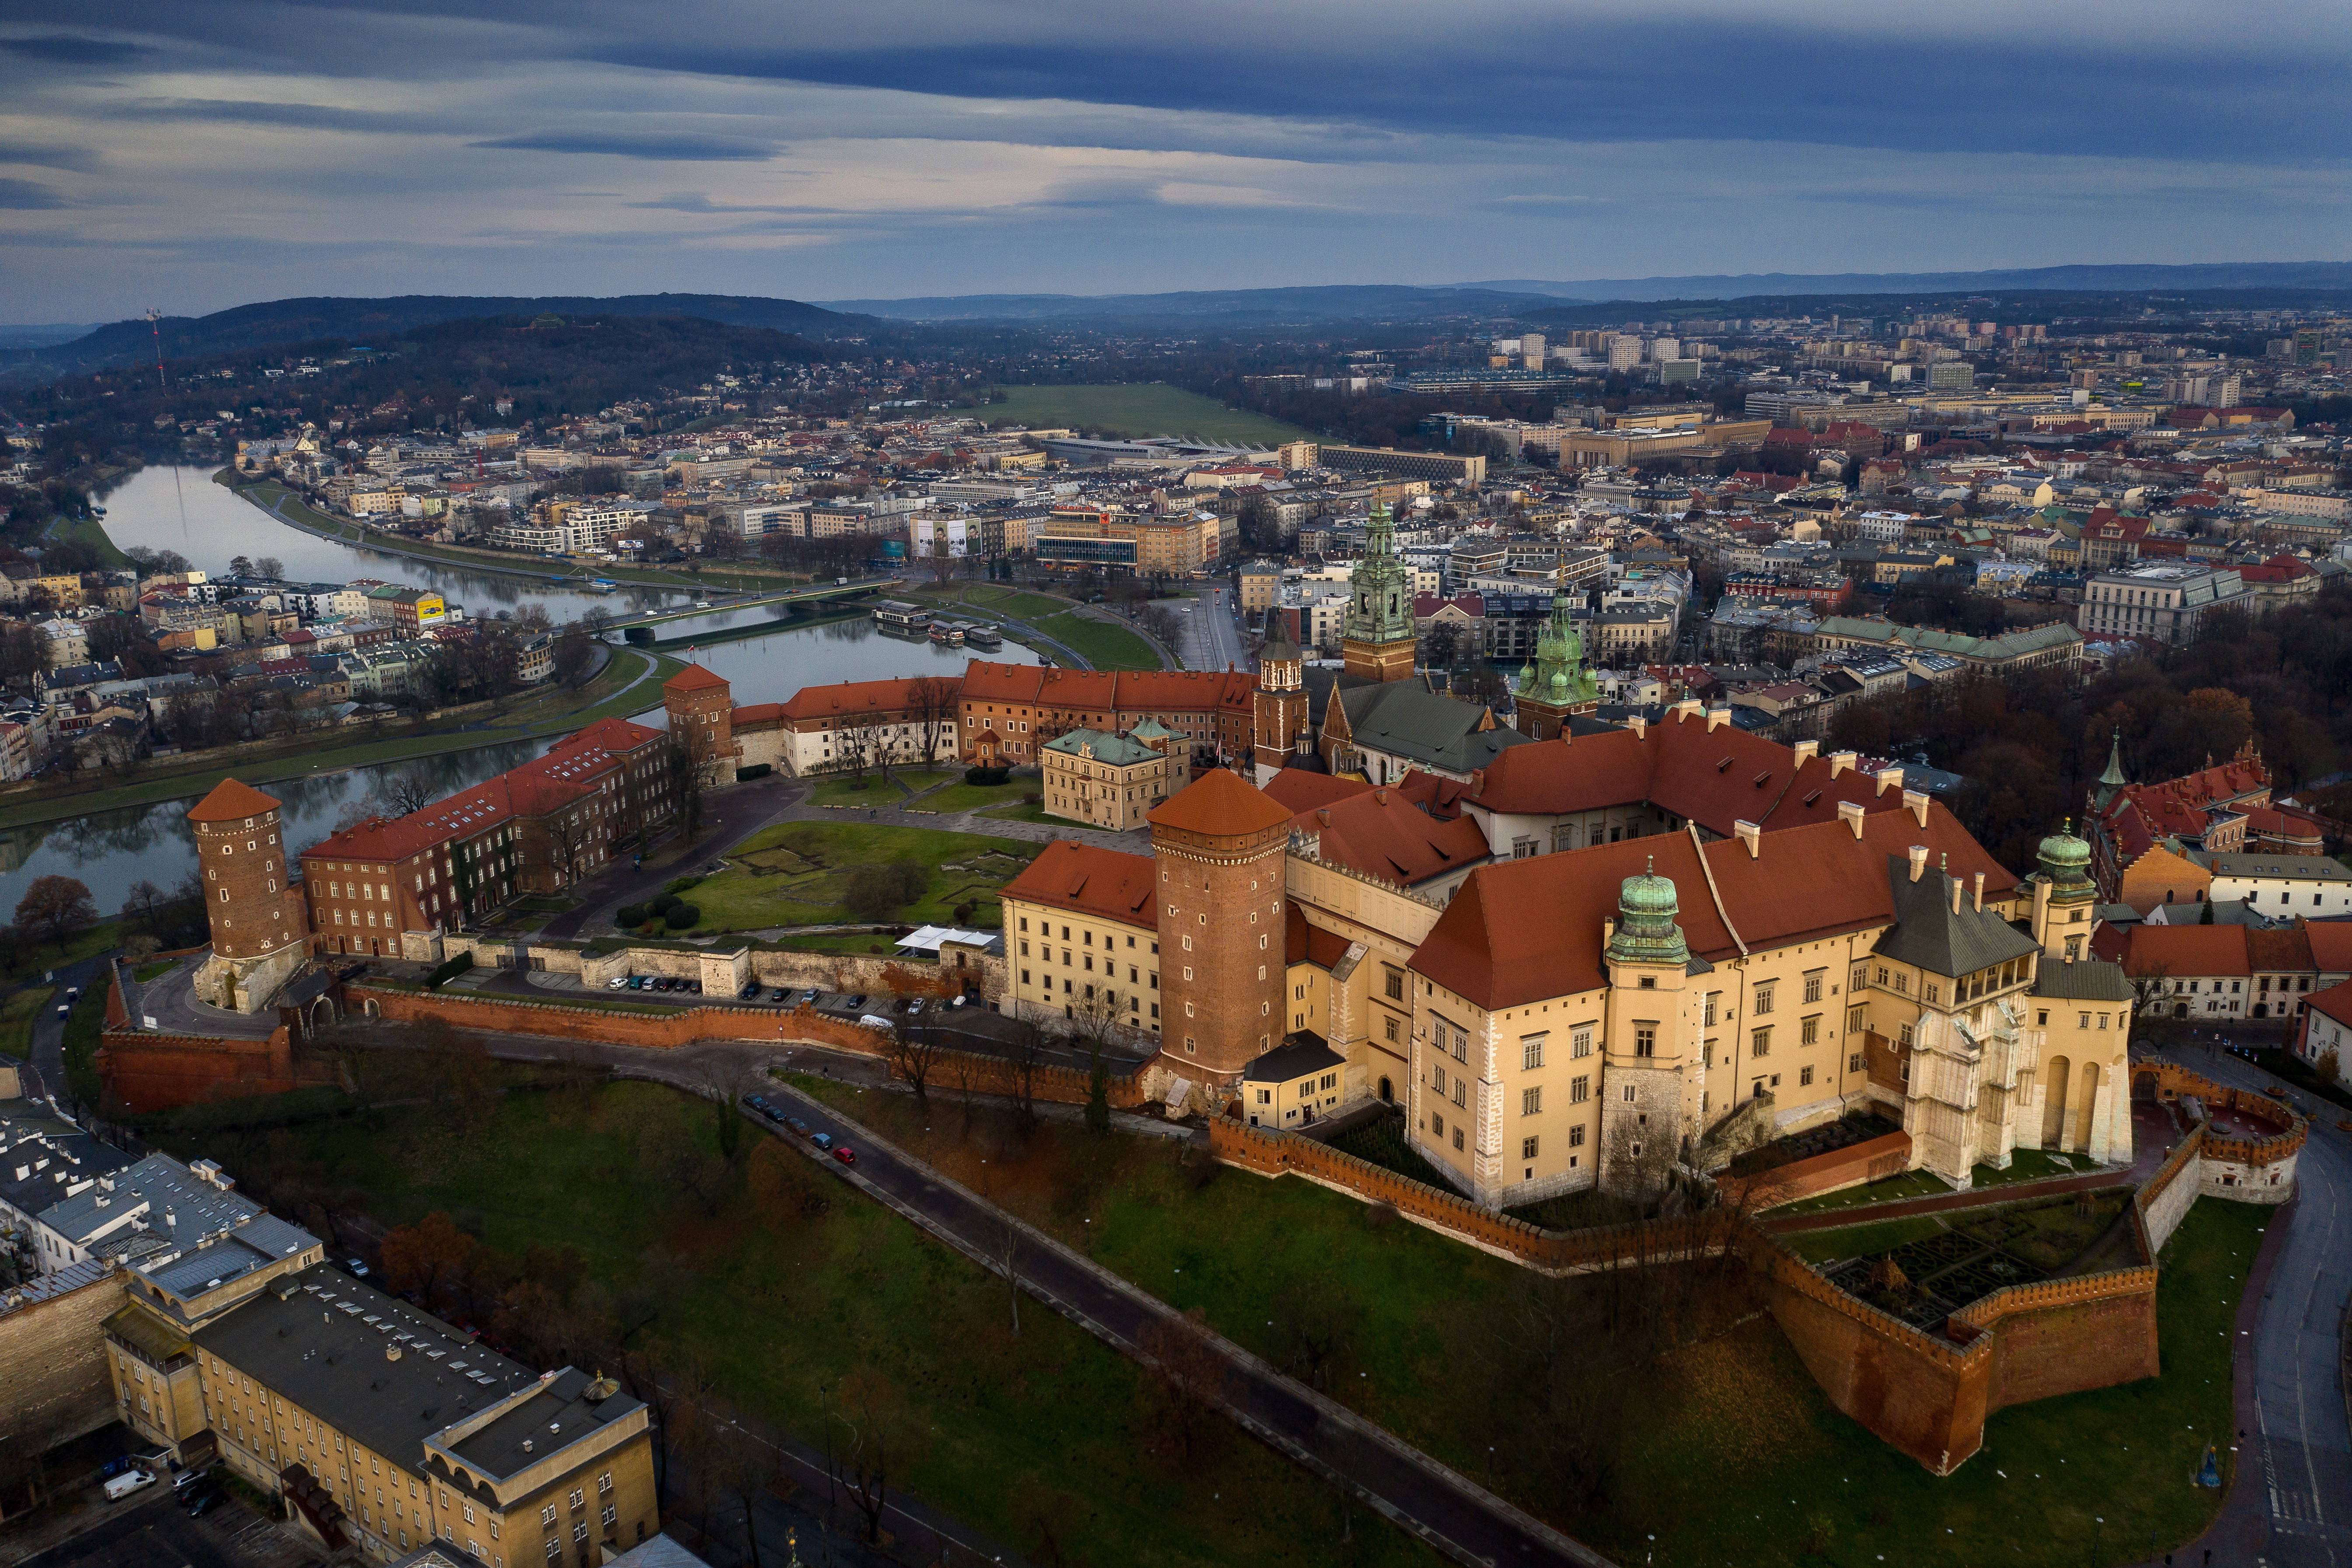 这是12月5日在波兰城市克拉科夫拍摄的皇家瓦韦尔城堡(无人机航拍).